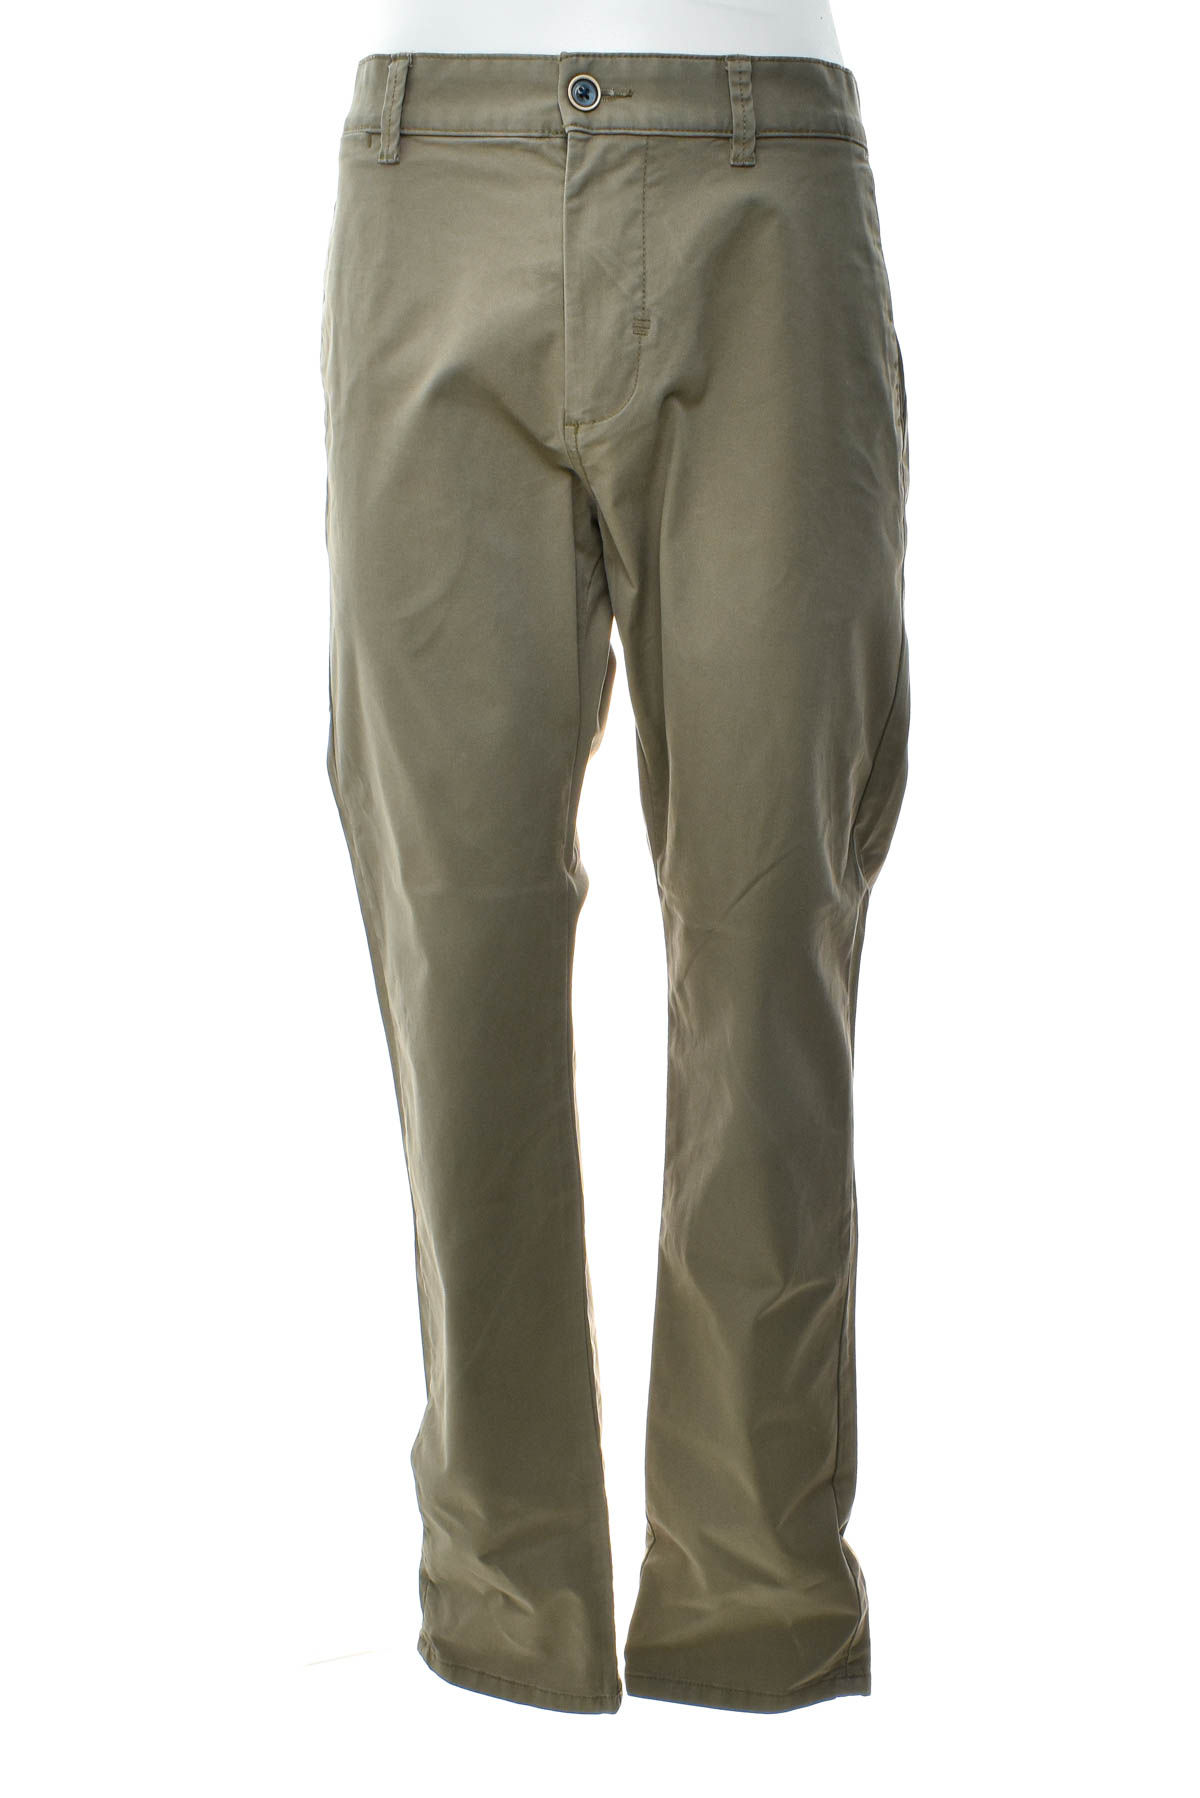 Pantalon pentru bărbați - ESPRIT - 0